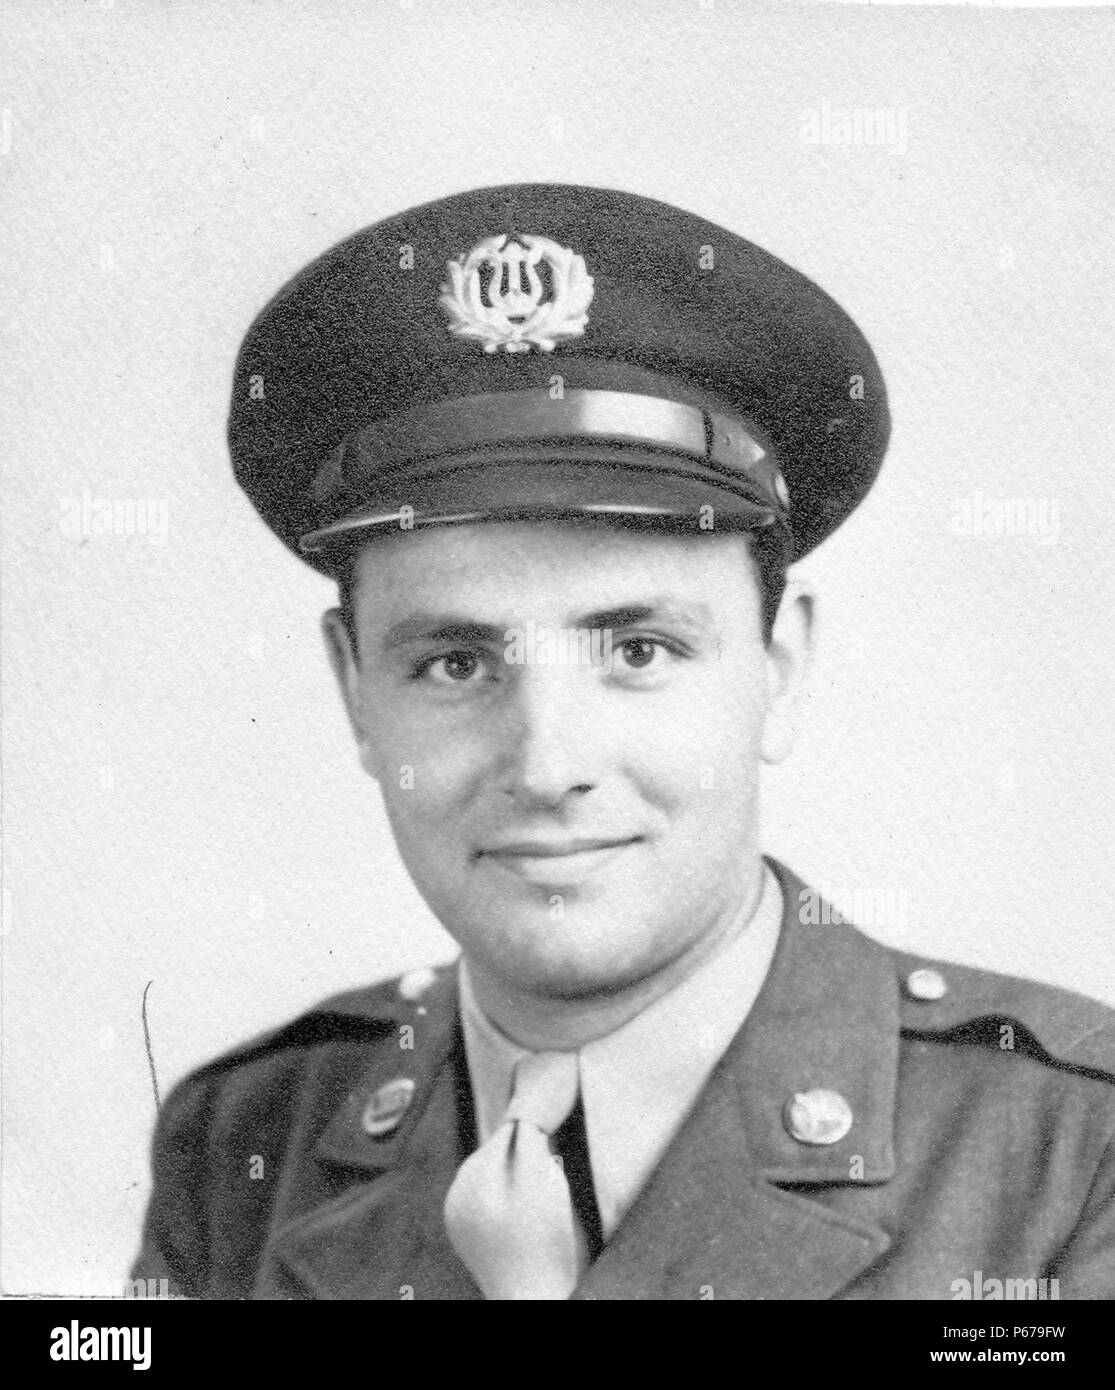 Fotografía en blanco y negro, mostrando un headshot formal de un macho soldado, mirando hacia la cámara, con una muy ligera sonrisa, vistiendo un uniforme de la Fuerza Aérea con un pin en la solapa y tapa con una insignia de la banda del ejército de los Estados Unidos, probablemente fotografiado en Ohio durante la II Guerra Mundial, en 1945. () Foto de stock